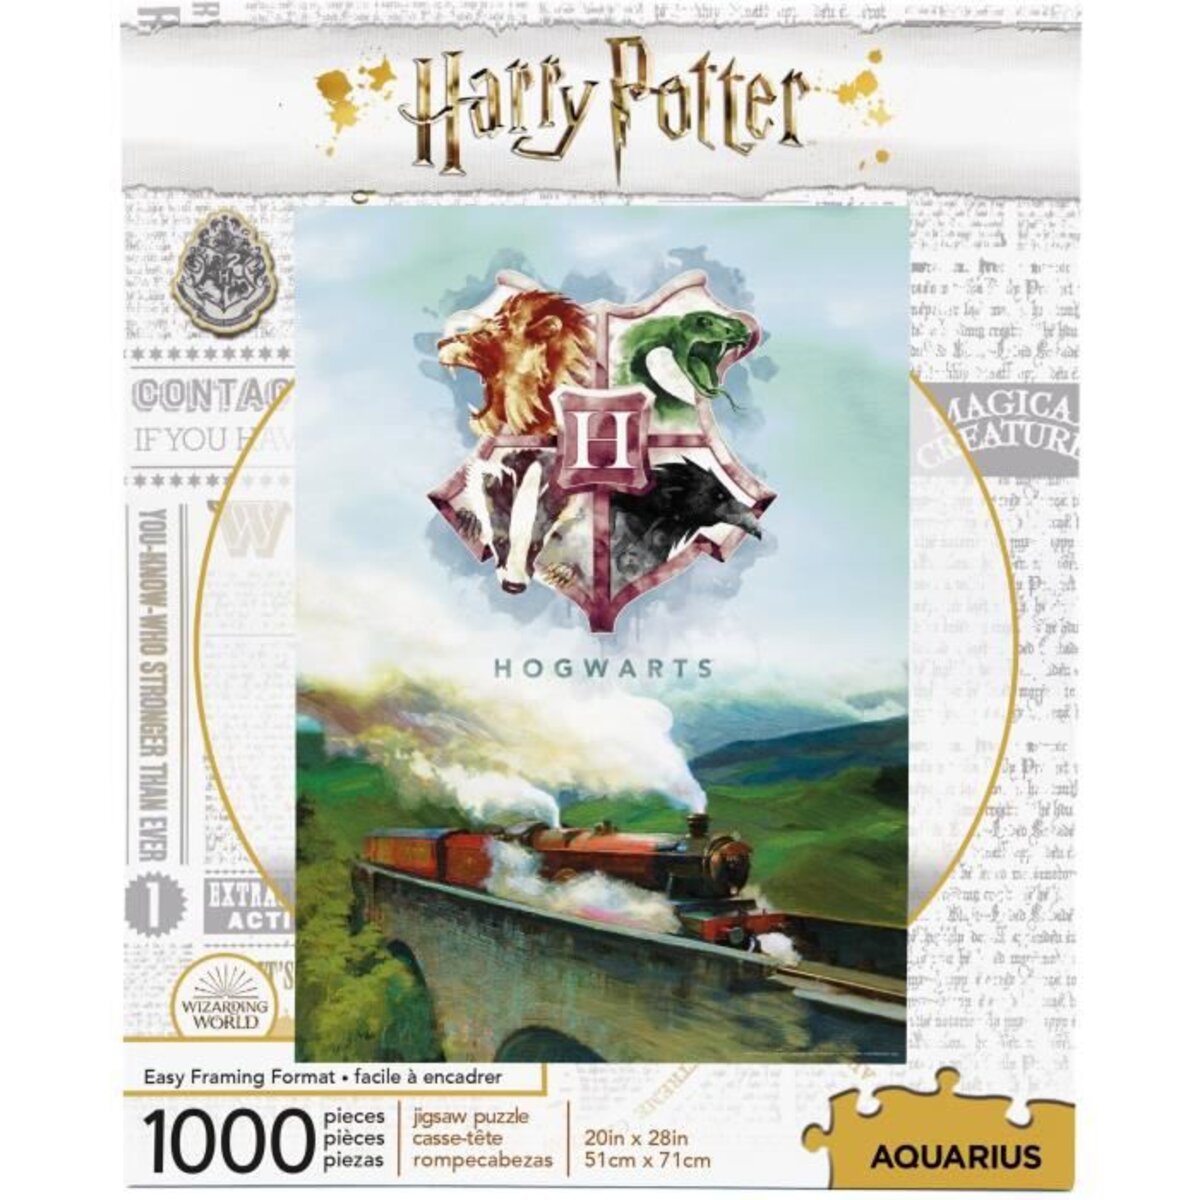 HARRY POTTER Valise Puzzle 1000 pieces - La Poste